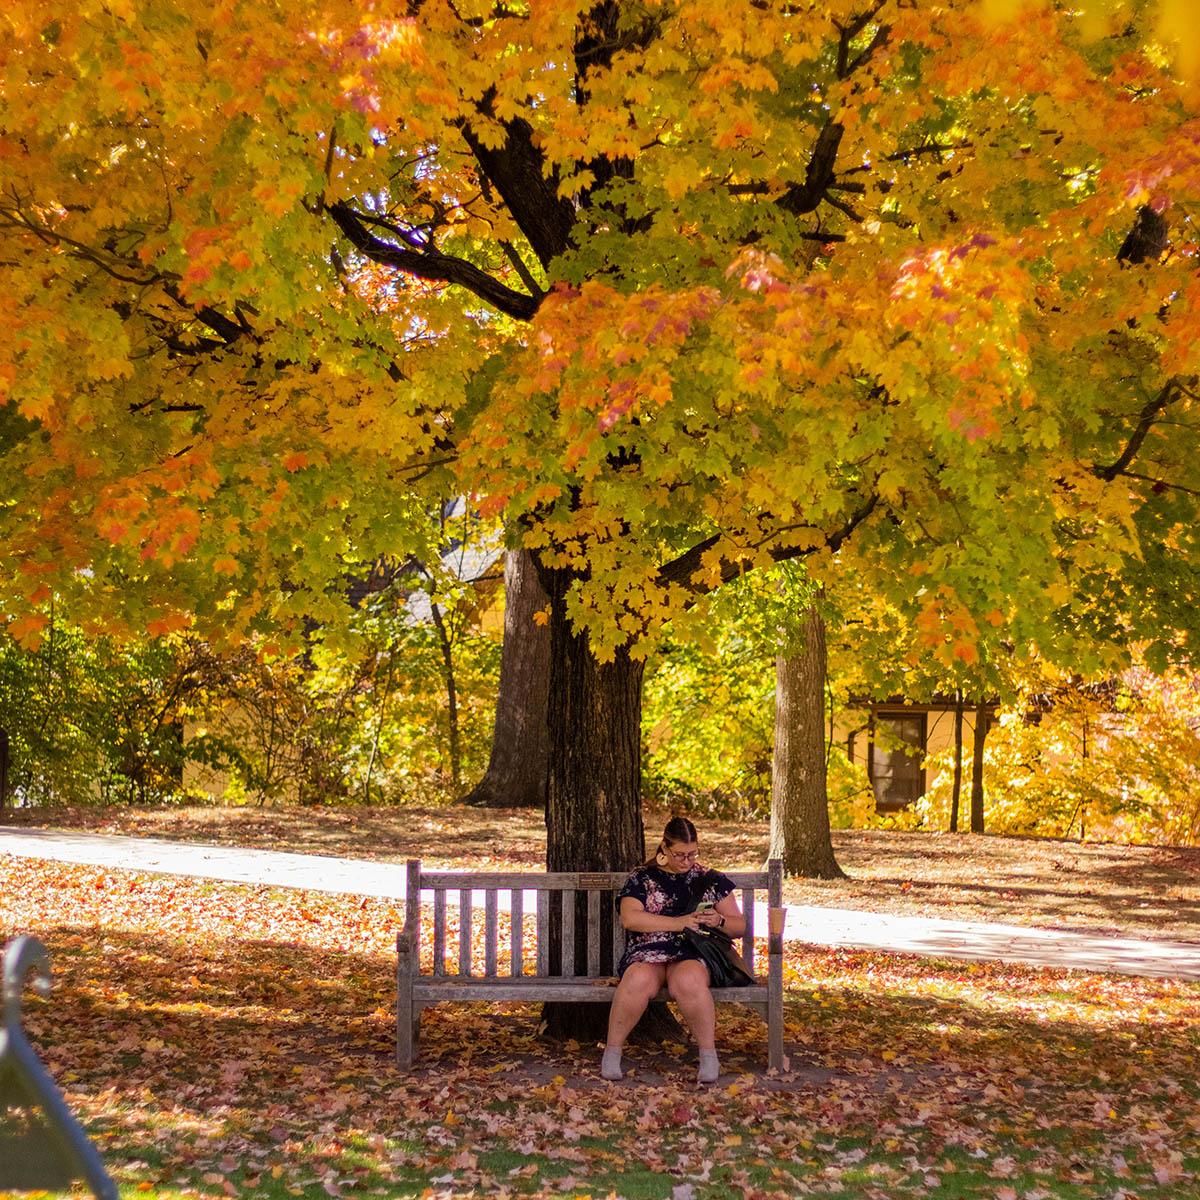 一个女人坐在长凳上看手机的照片, 在荫边校园一棵明亮的秋树下